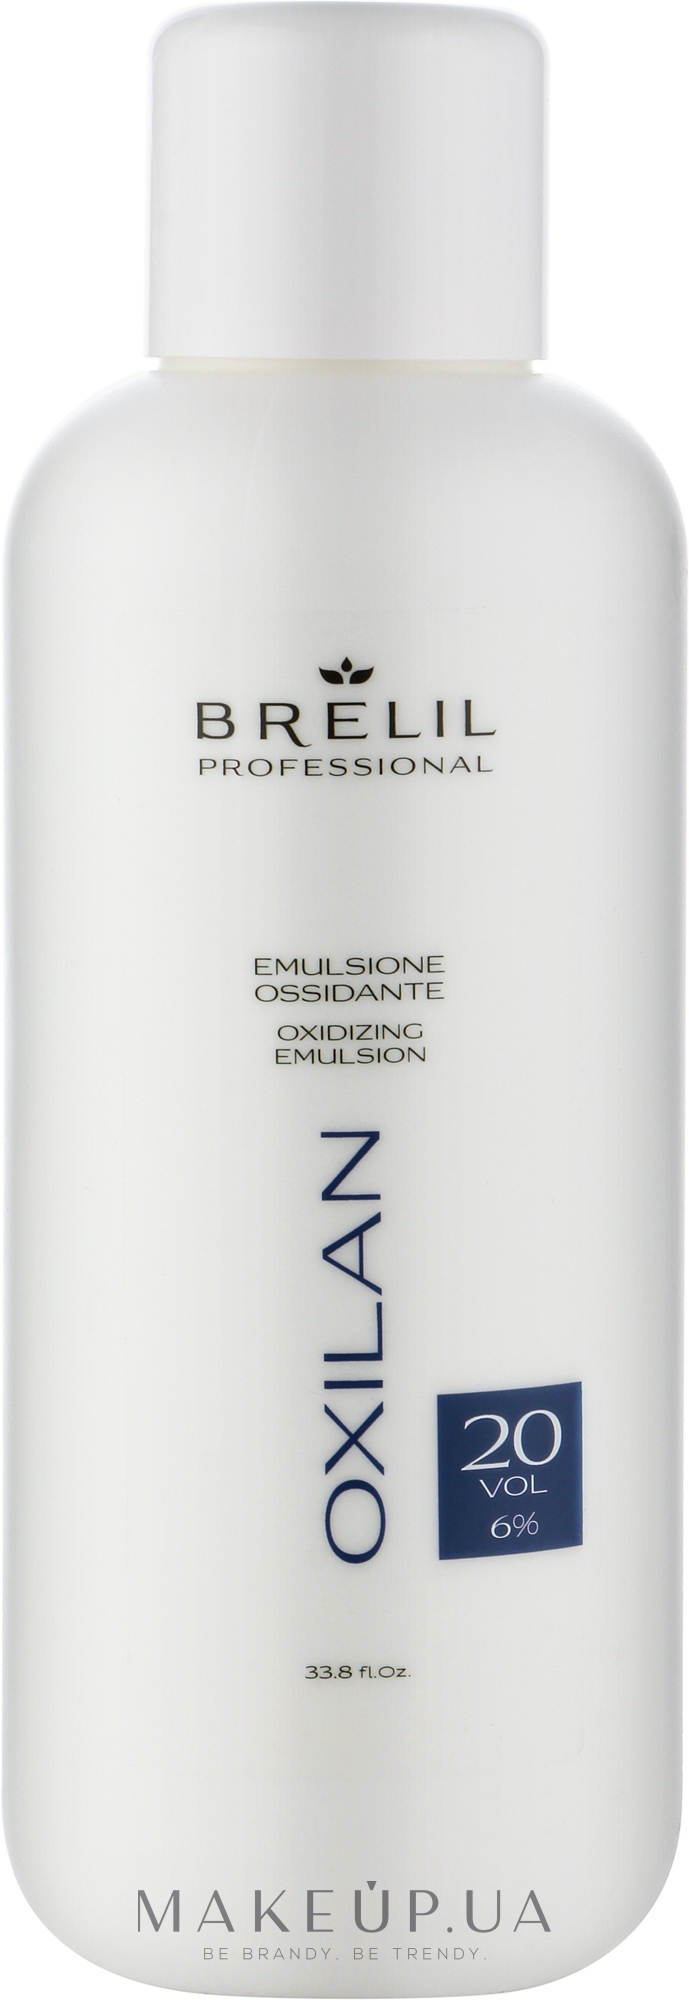 Окислительная эмульсия - Brelil Soft Perfumed Cream Developer 20 vol. (6%) — фото 1000ml